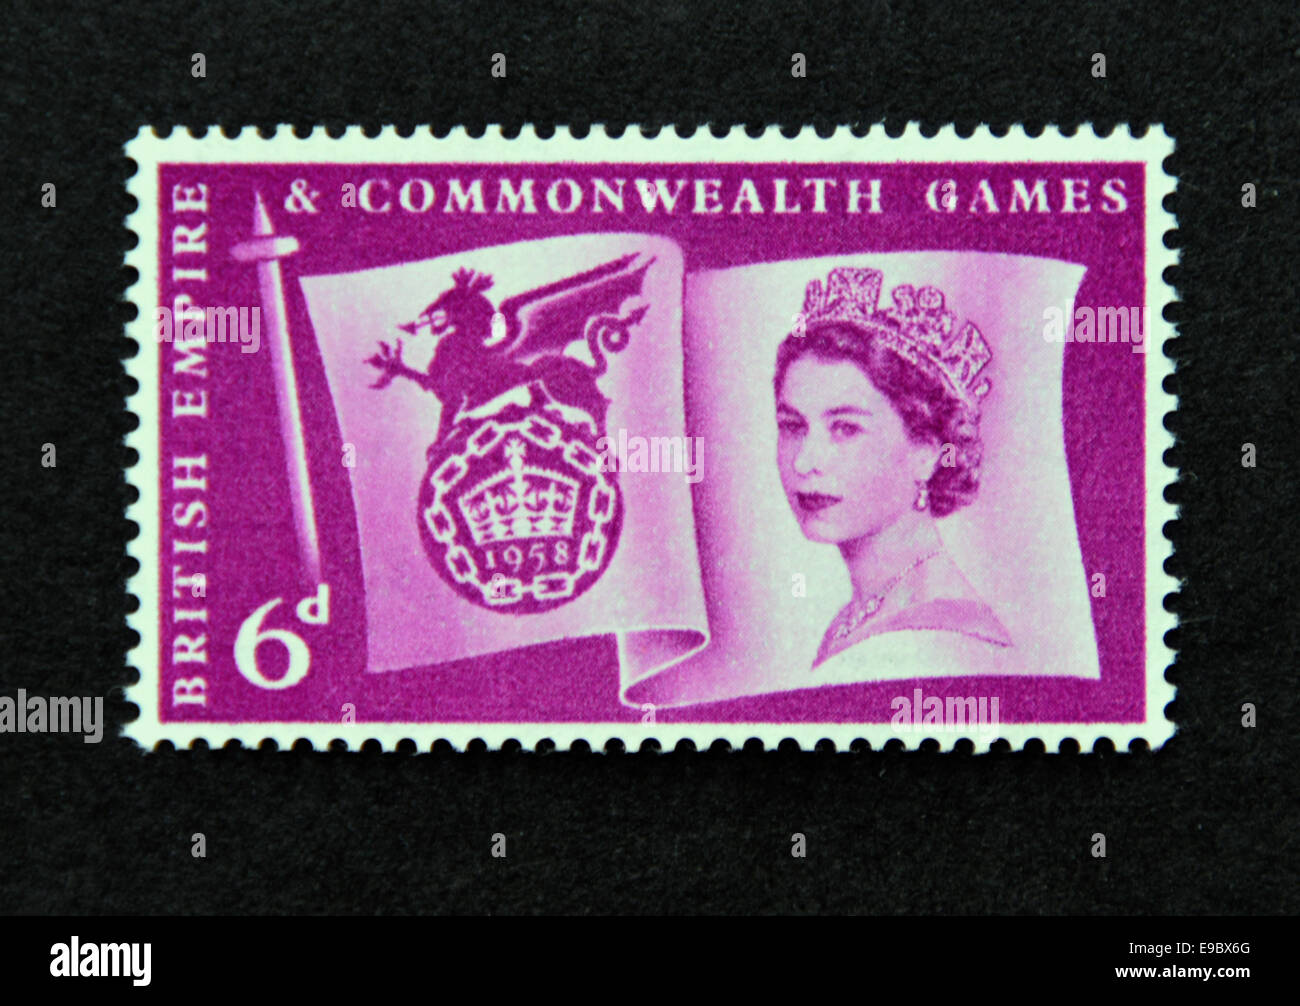 Briefmarke. Great Britain. Königin Elizabeth II.  VIth.British Empire & Commonwealth Games. 1958. Stockfoto